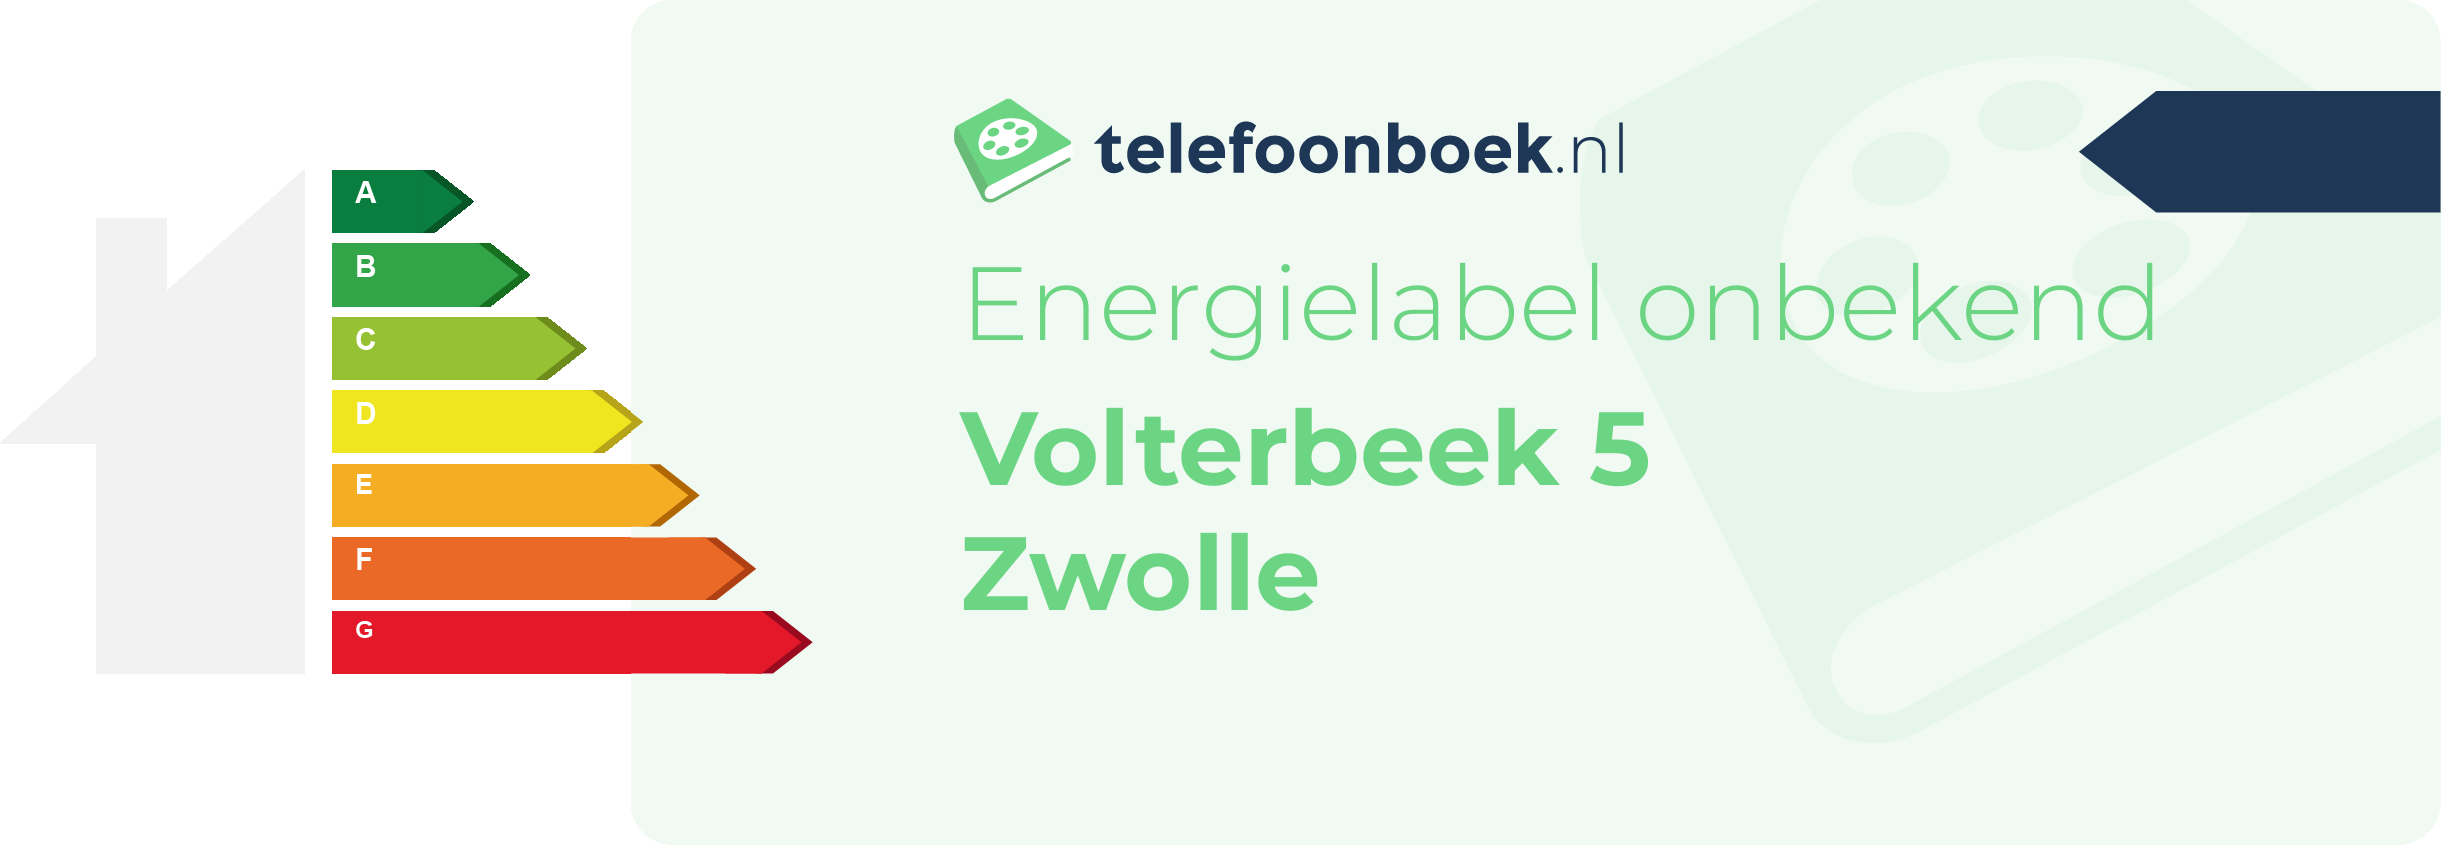 Energielabel Volterbeek 5 Zwolle